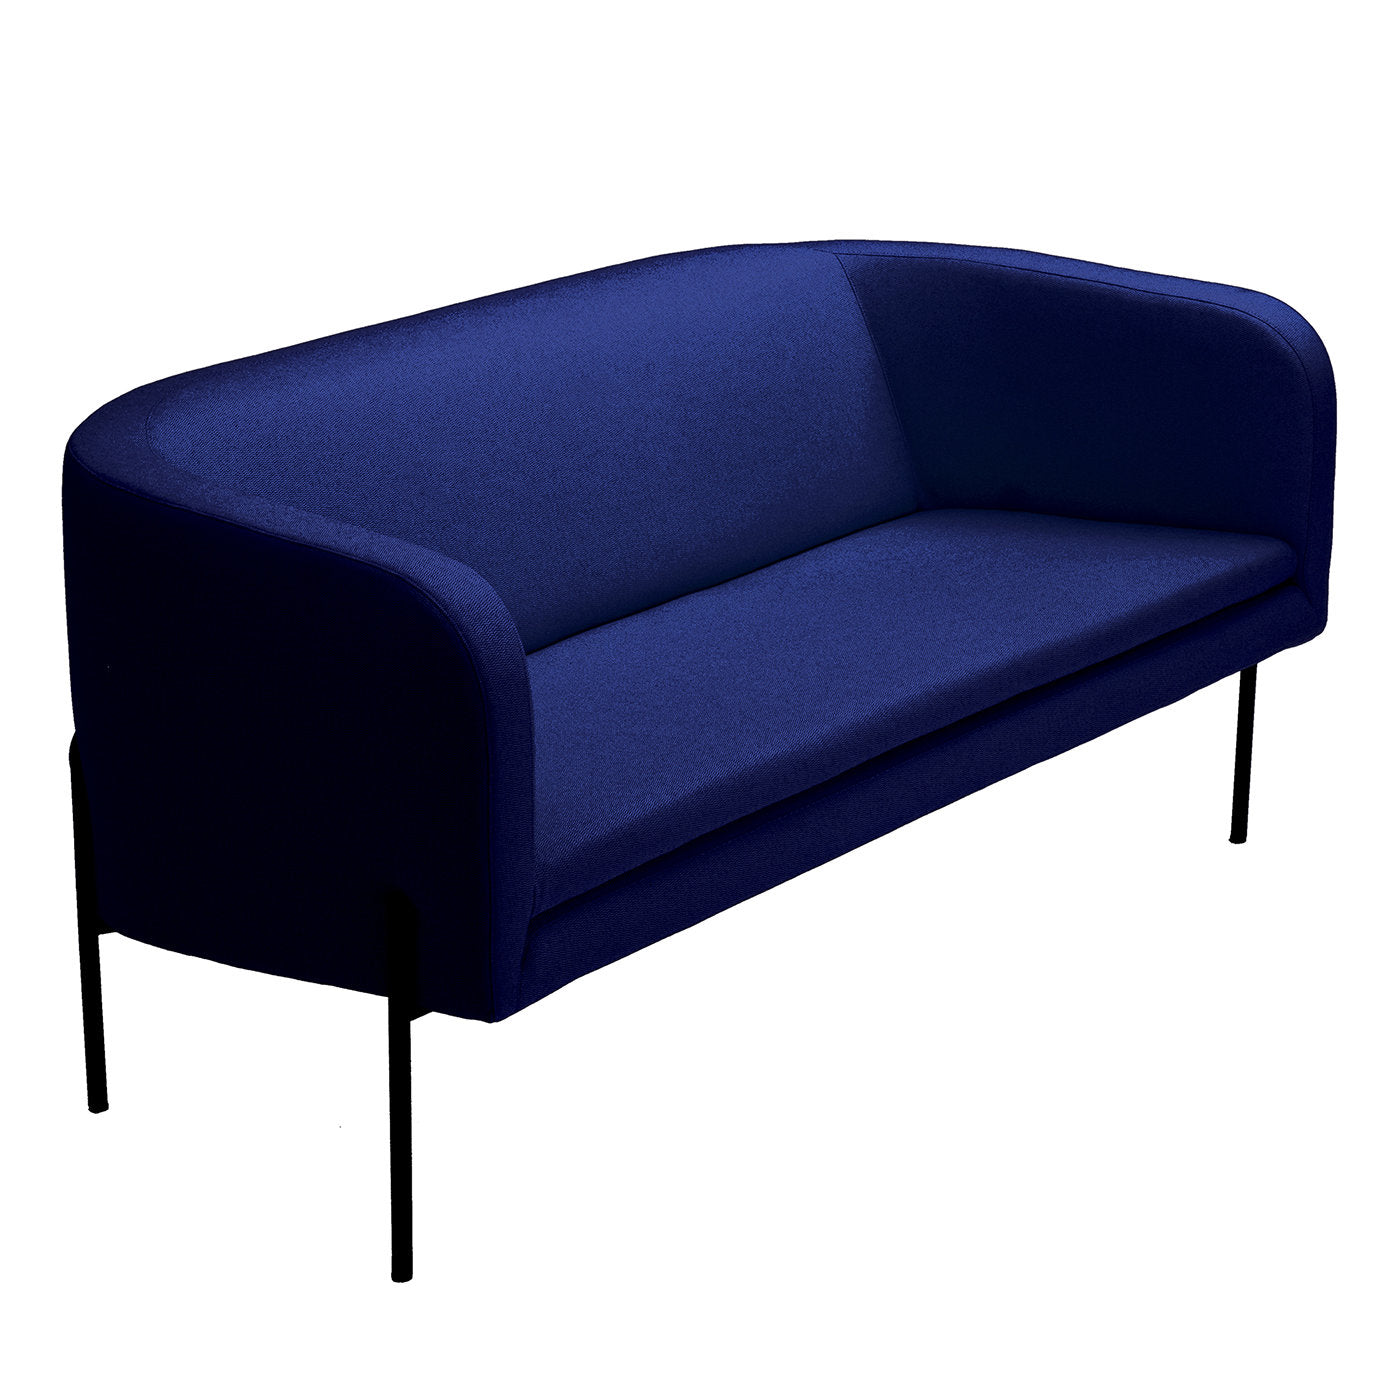 Laetitia Blaues 2-sitzer-sofa by Fabio Fantolino - Hauptansicht